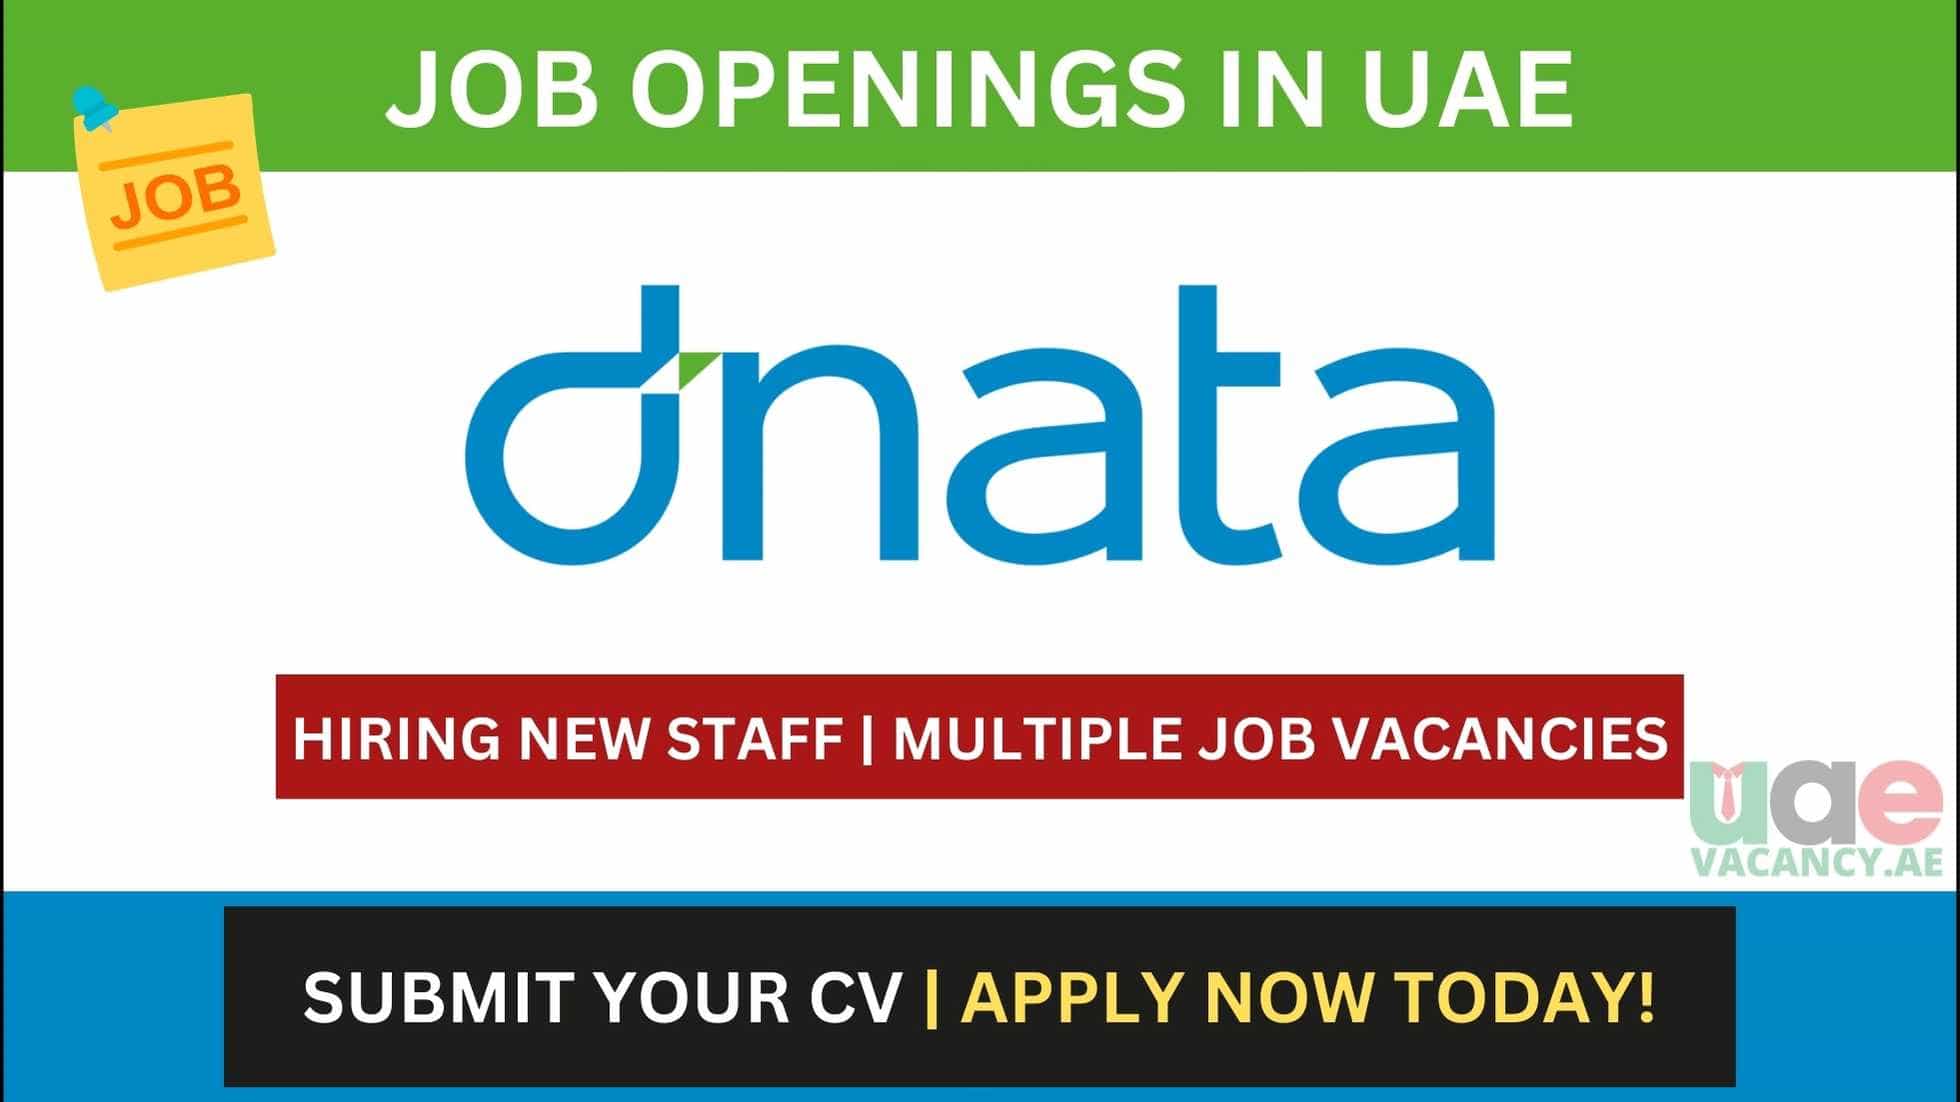 Dnata Careers in UAE